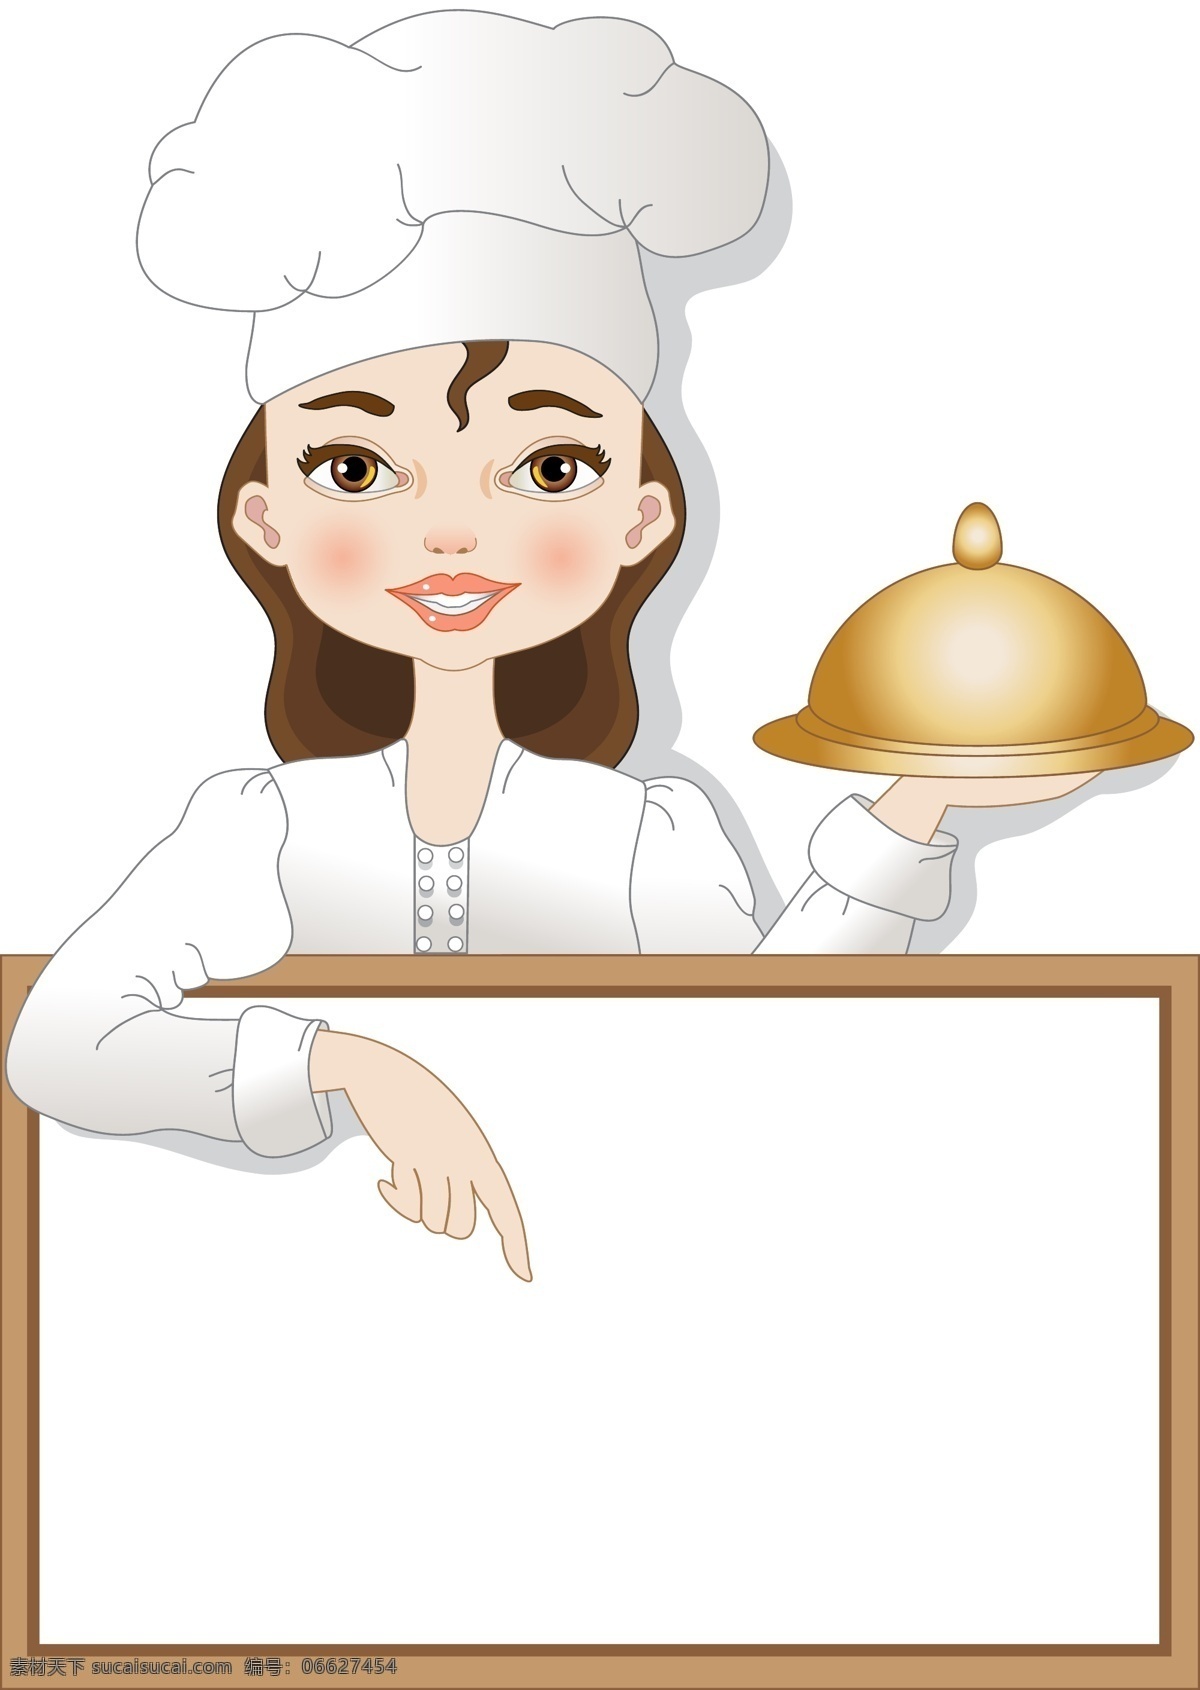 厨师 大厨 女厨师 美女 西餐厨师 西餐 卡通 卡通设计 矢量时尚美女 妇女女性 矢量人物 矢量